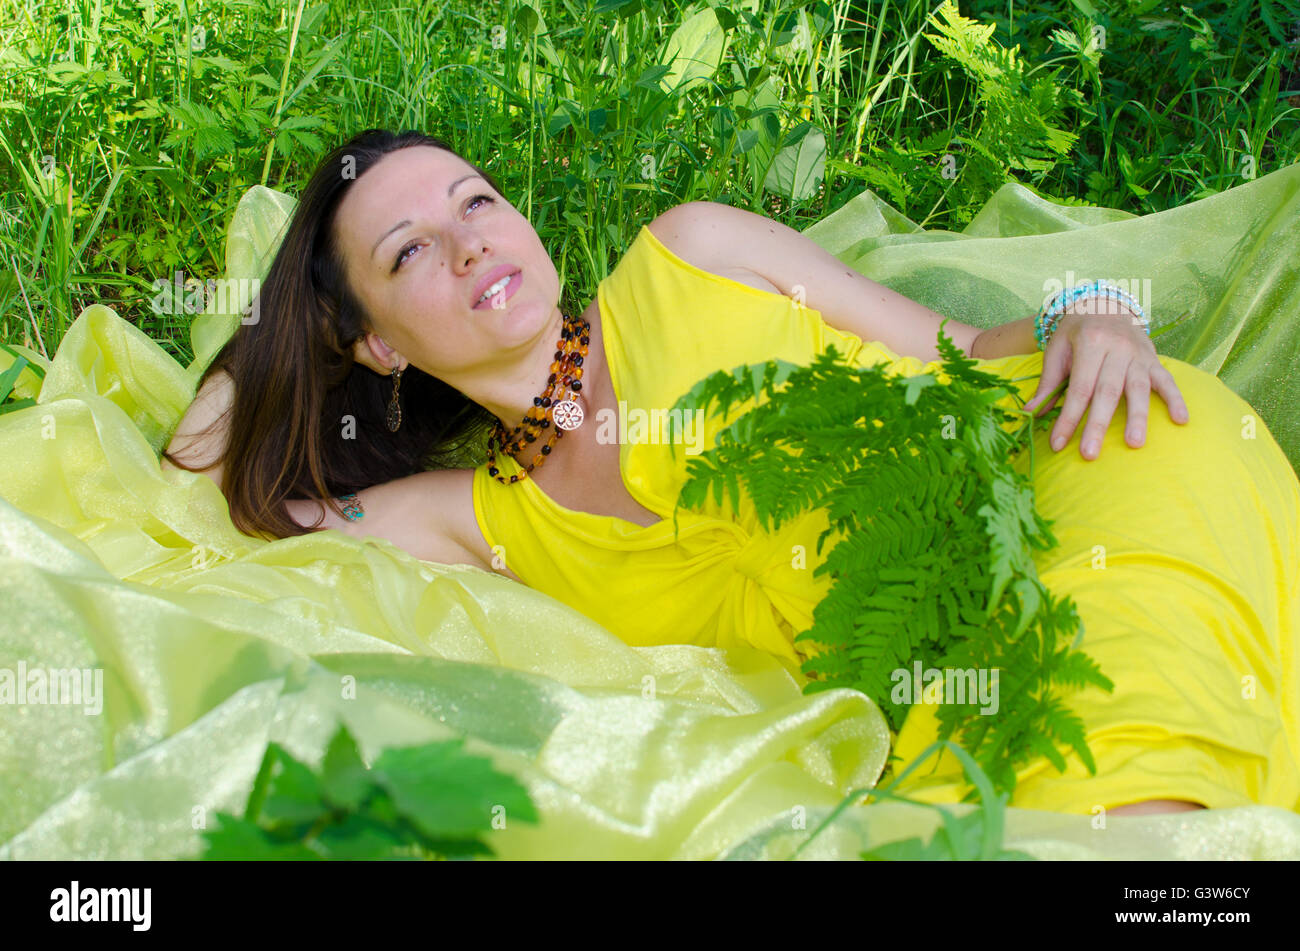 La jeune fille dort sur la matière jaune dans la nature, les jeunes, la jeune fille, capacité, sur jaune, matière, vert, une herbe, l'été Banque D'Images